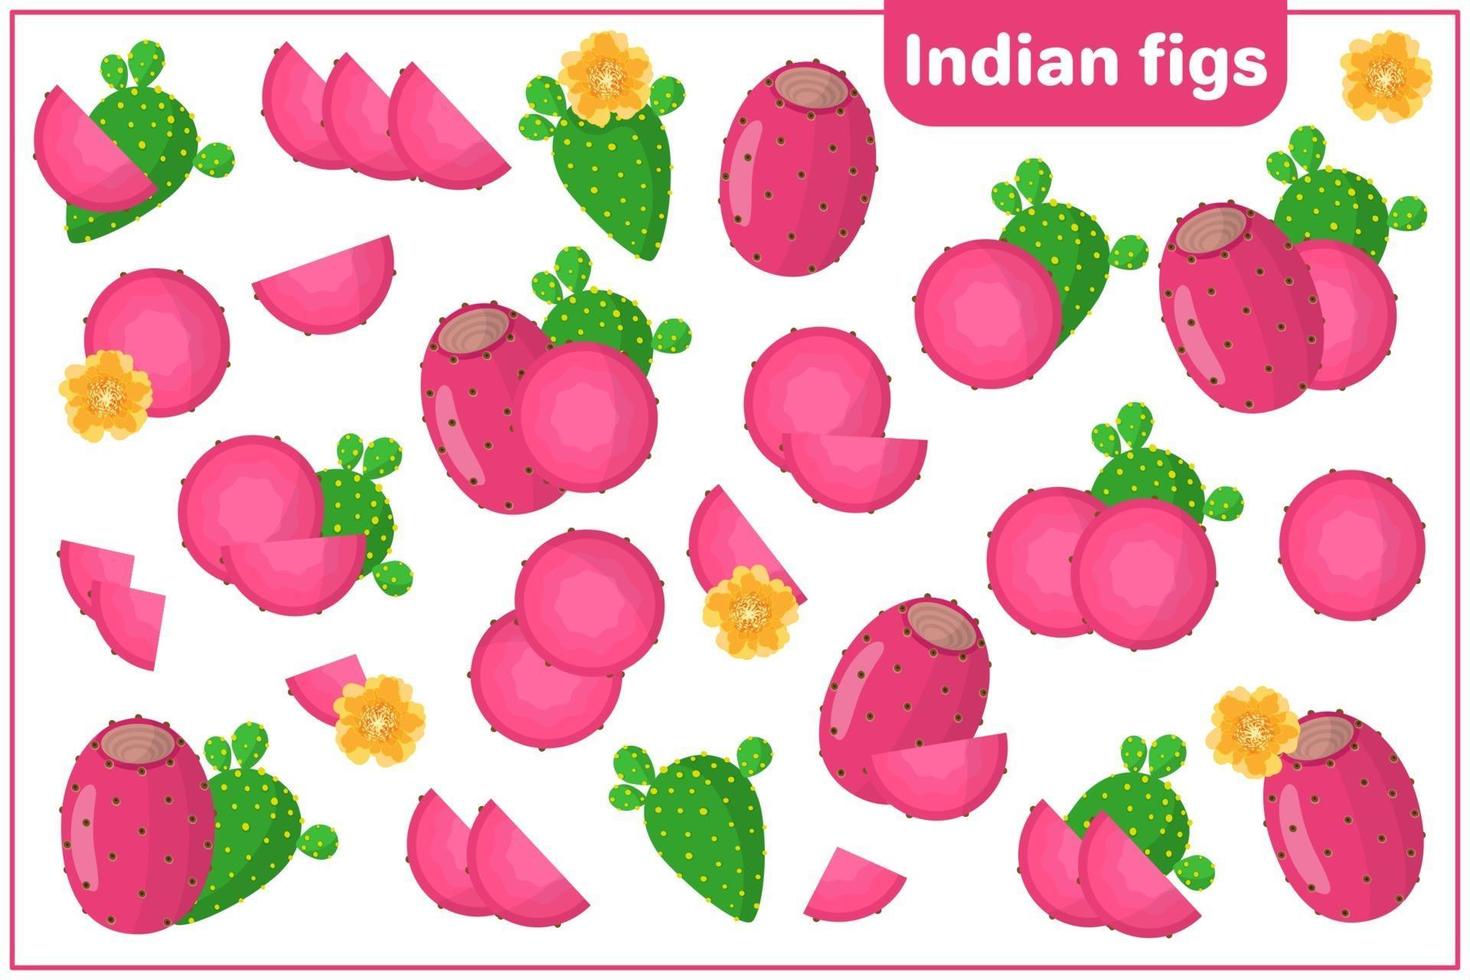 Satz Vektorkarikaturillustrationen mit exotischen Früchten, Blumen und Blättern der indischen Feigen lokalisiert auf weißem Hintergrund vektor